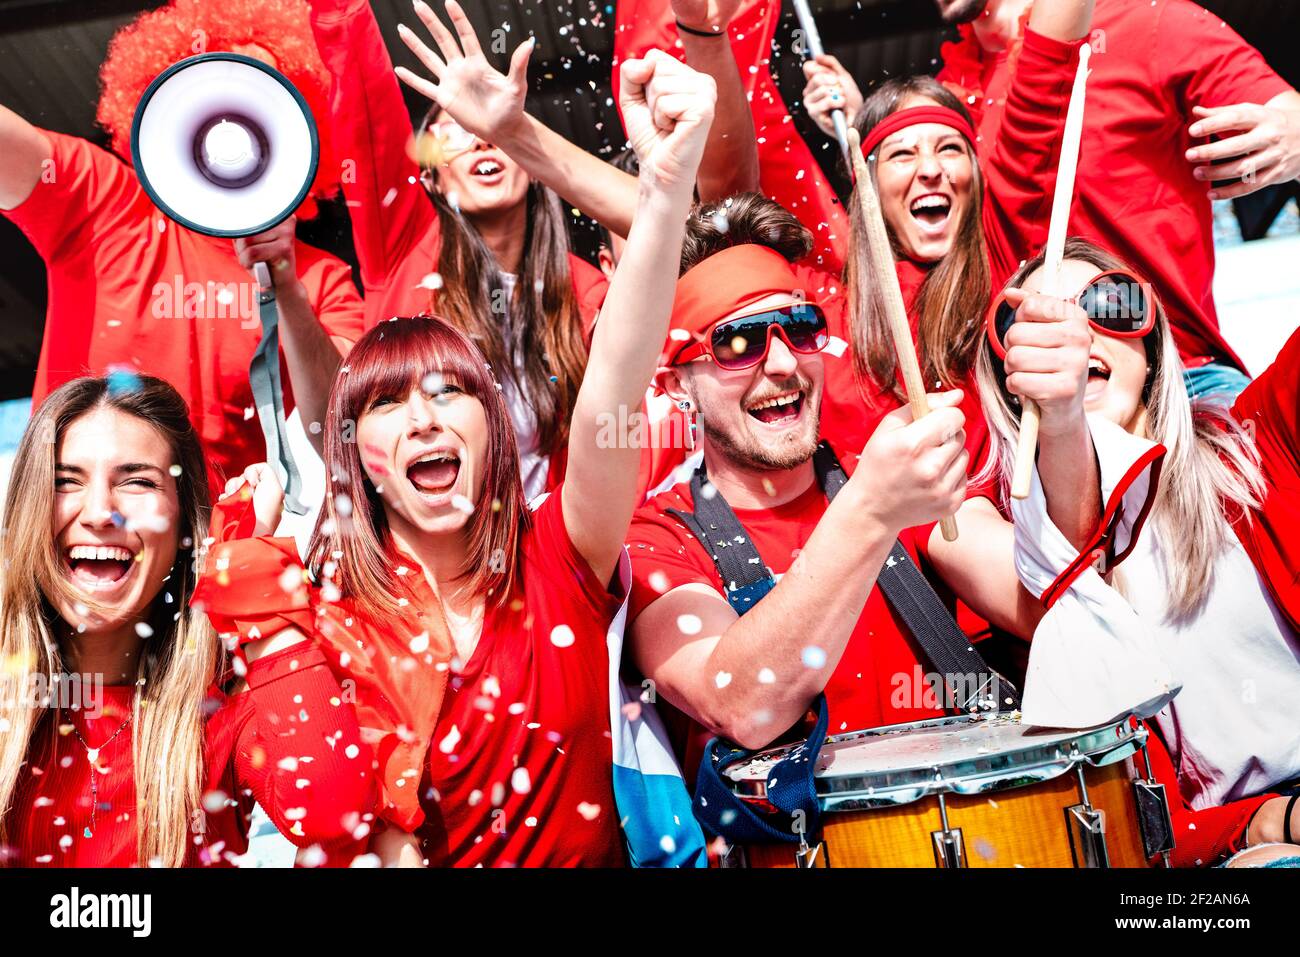 Tifosi di calcio tifosi con i confetti che guardano la coppa di calcio partita Allo stadio tribune - Gruppo di giovani con T-shirt rossa divertimento emozionante Foto Stock